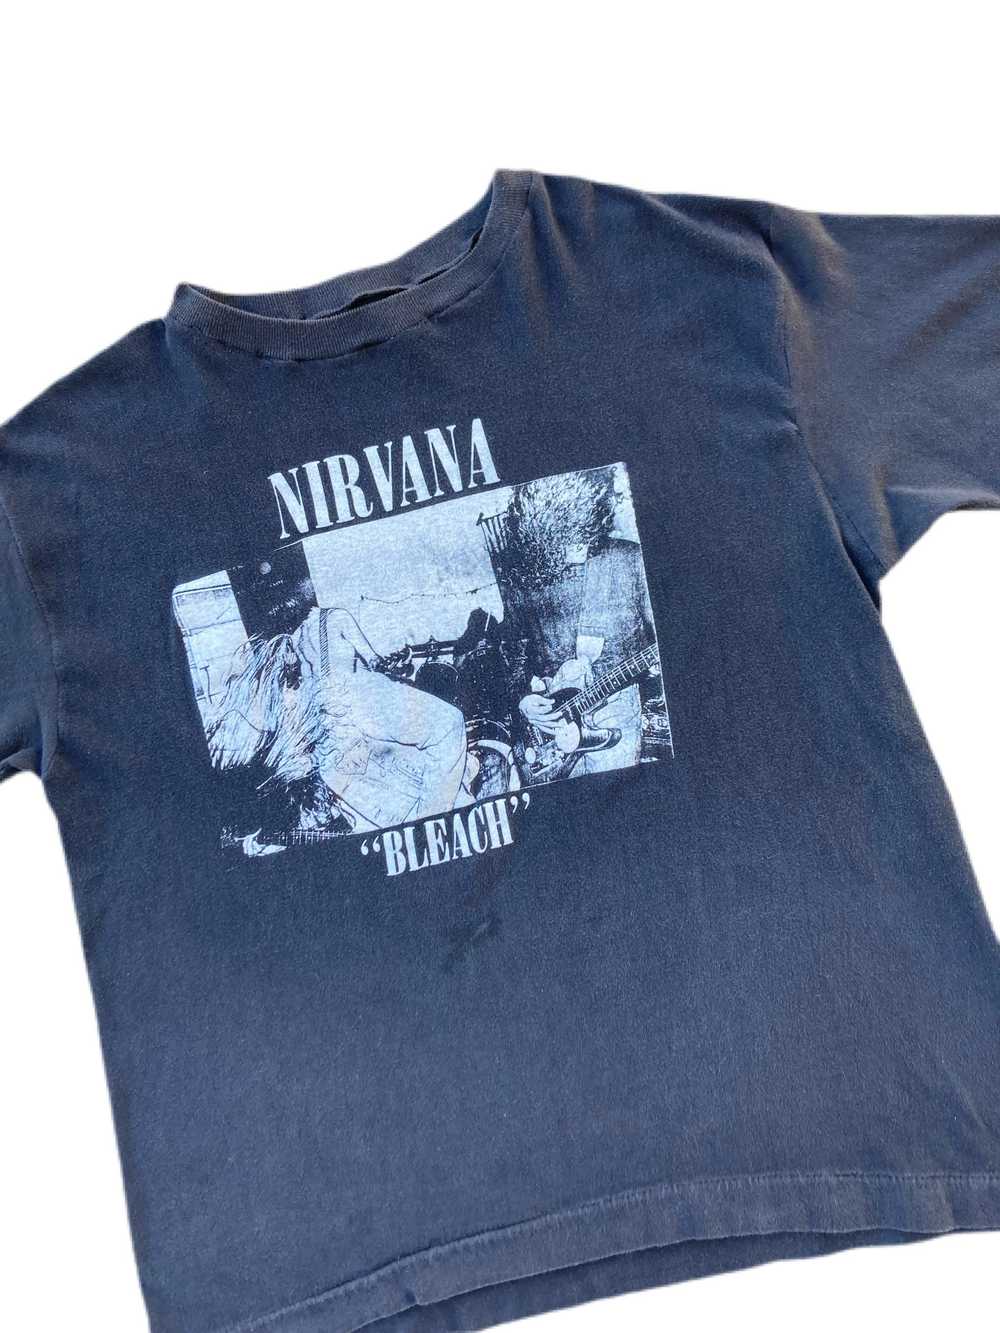 vintage nirvana bleach shirt 90s sub pop kurt cob… - image 3